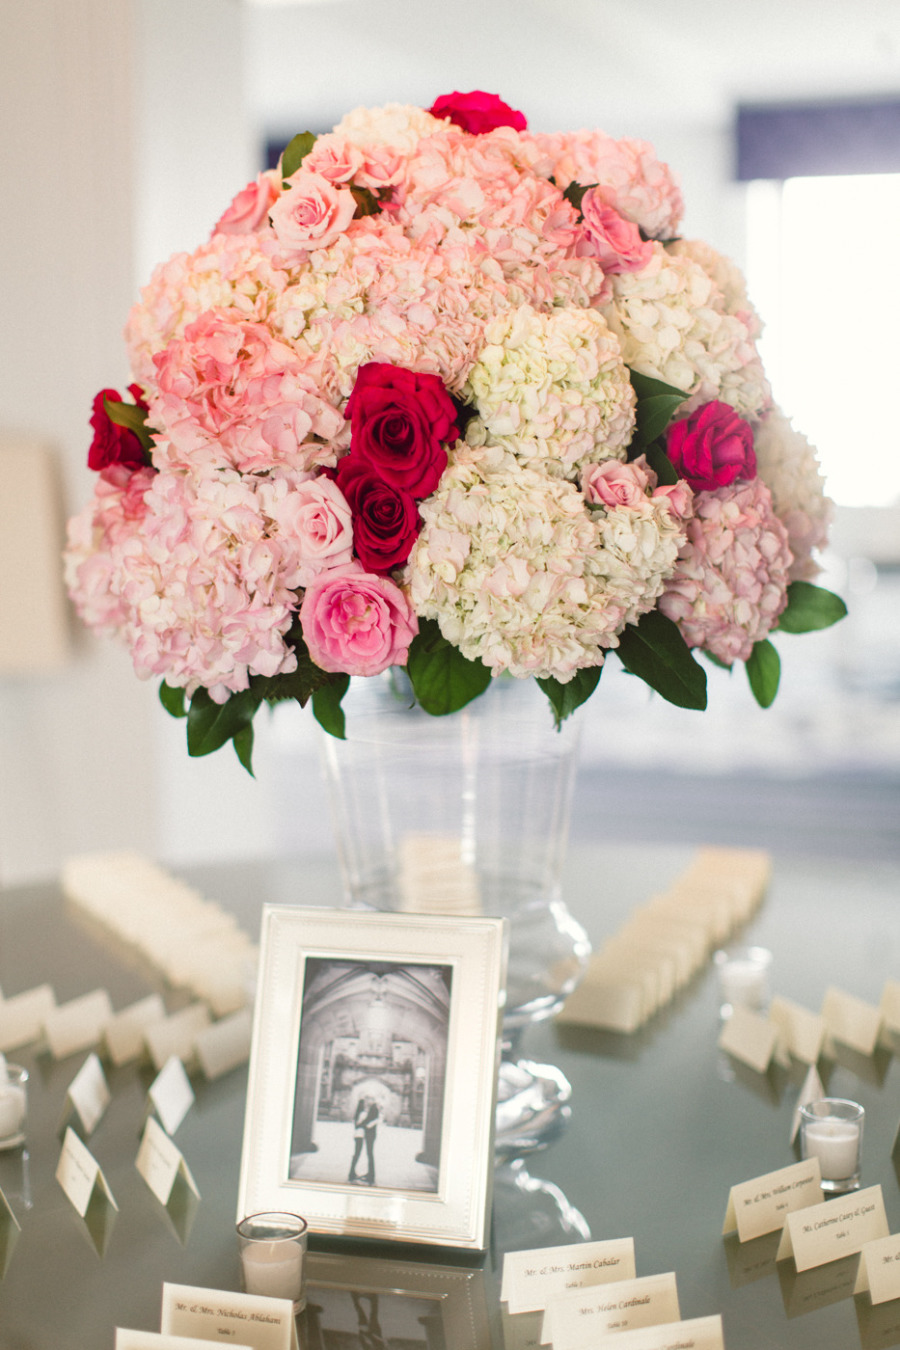 Hoa trang trí bàn tiệc màu hồng phấn kết từ cẩm tú cầu